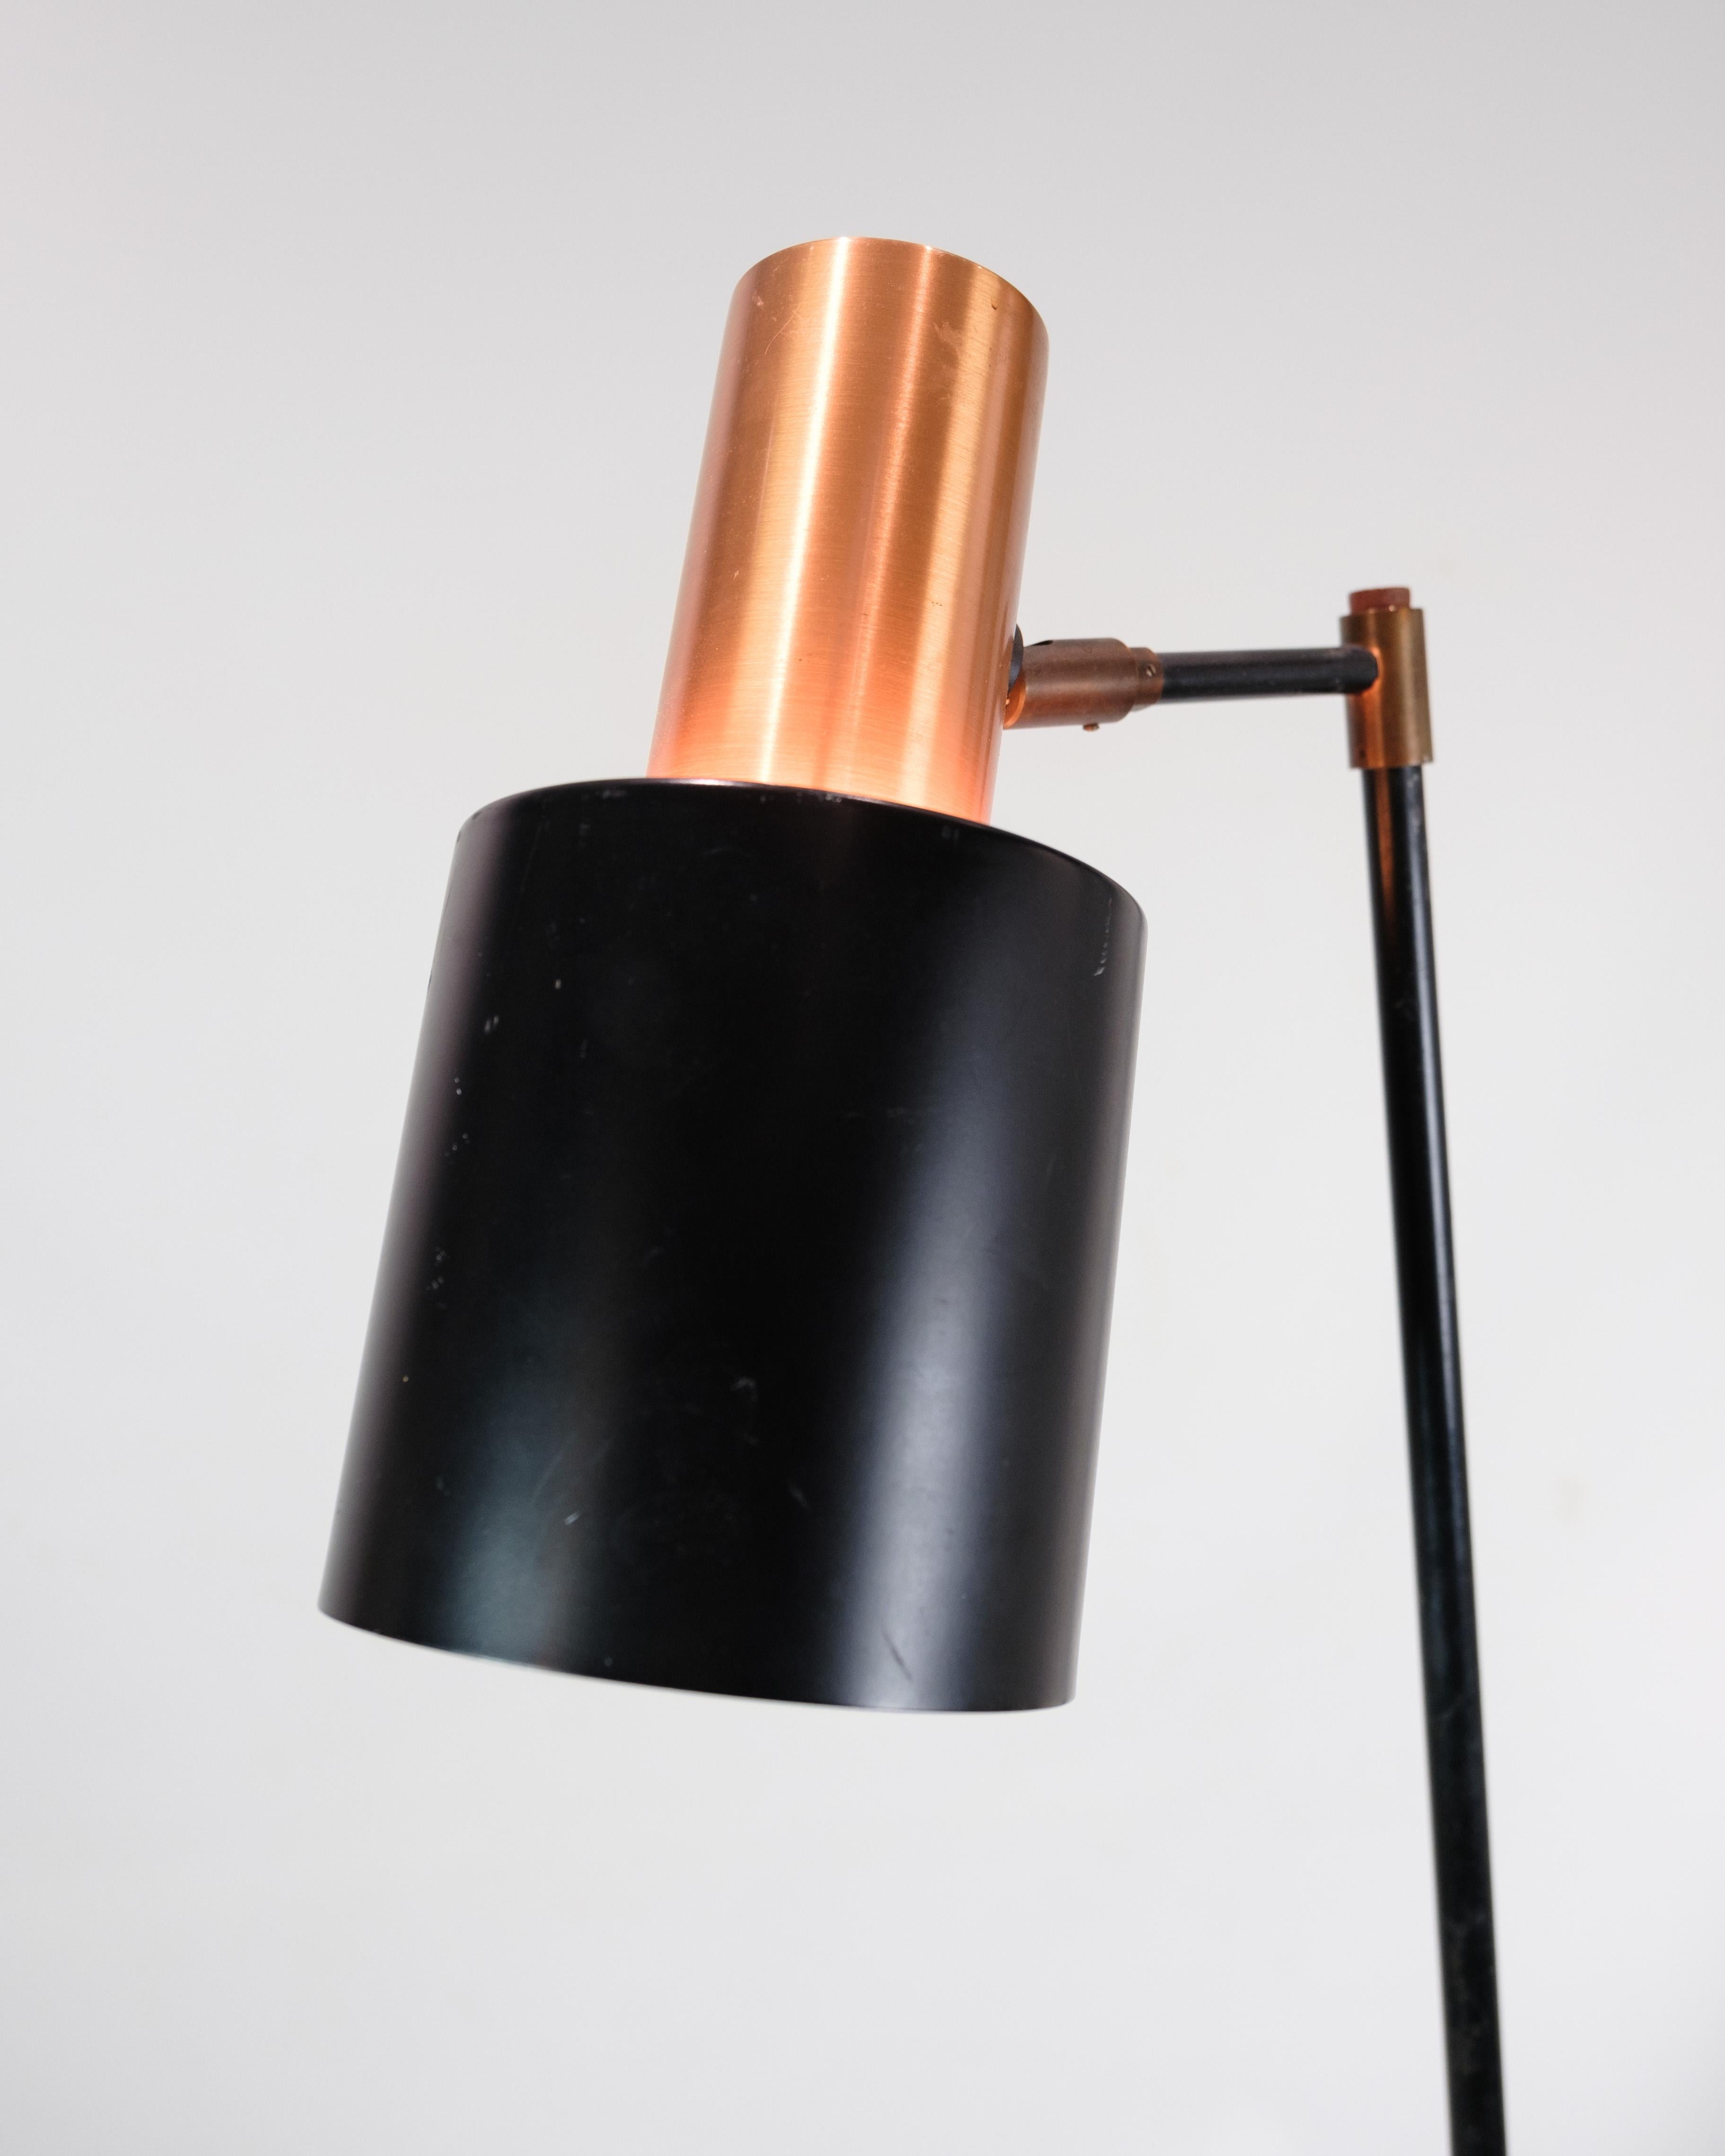 Ce lampadaire, connu sous le nom de Design/One, est un bel exemple du design d'éclairage danois des années 1970. La lampe est dotée d'une tige en métal laqué noir et d'une base de couleur cuivre qui ajoute une touche d'élégance et de chaleur à tout